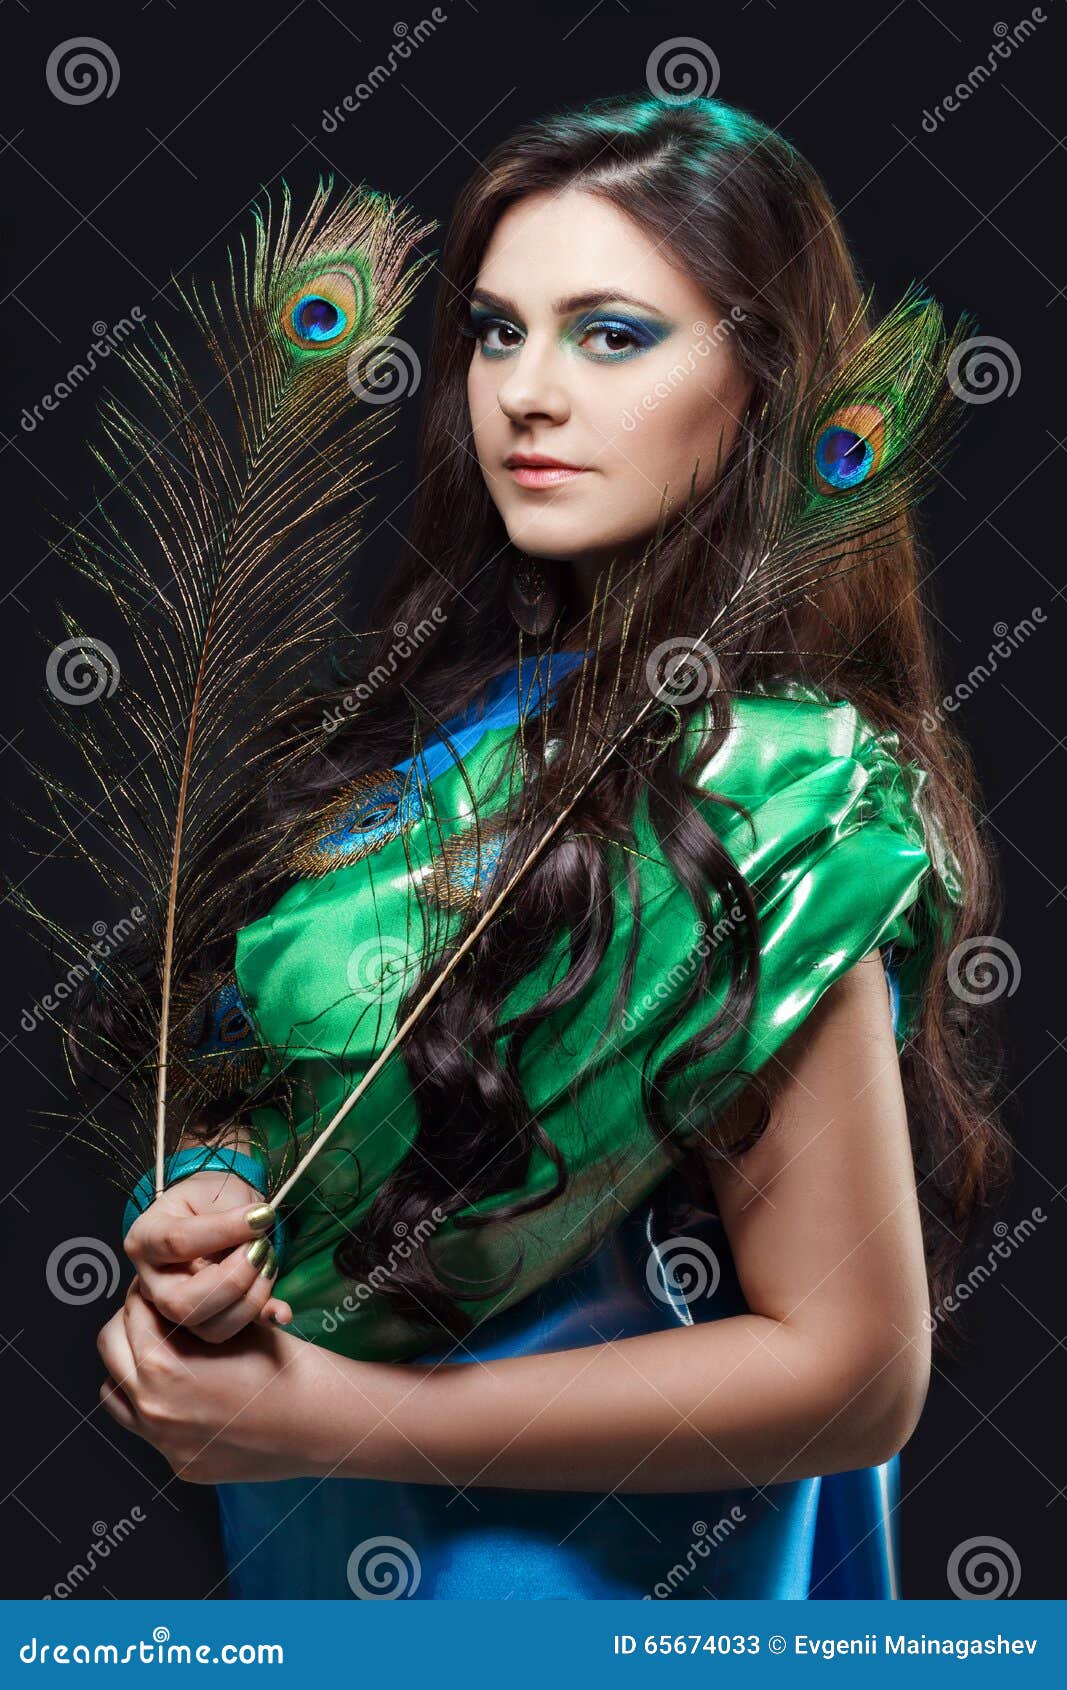 Peacock hair | Sweet 16 hairstyles, Peacock hair, Bride hairstyles